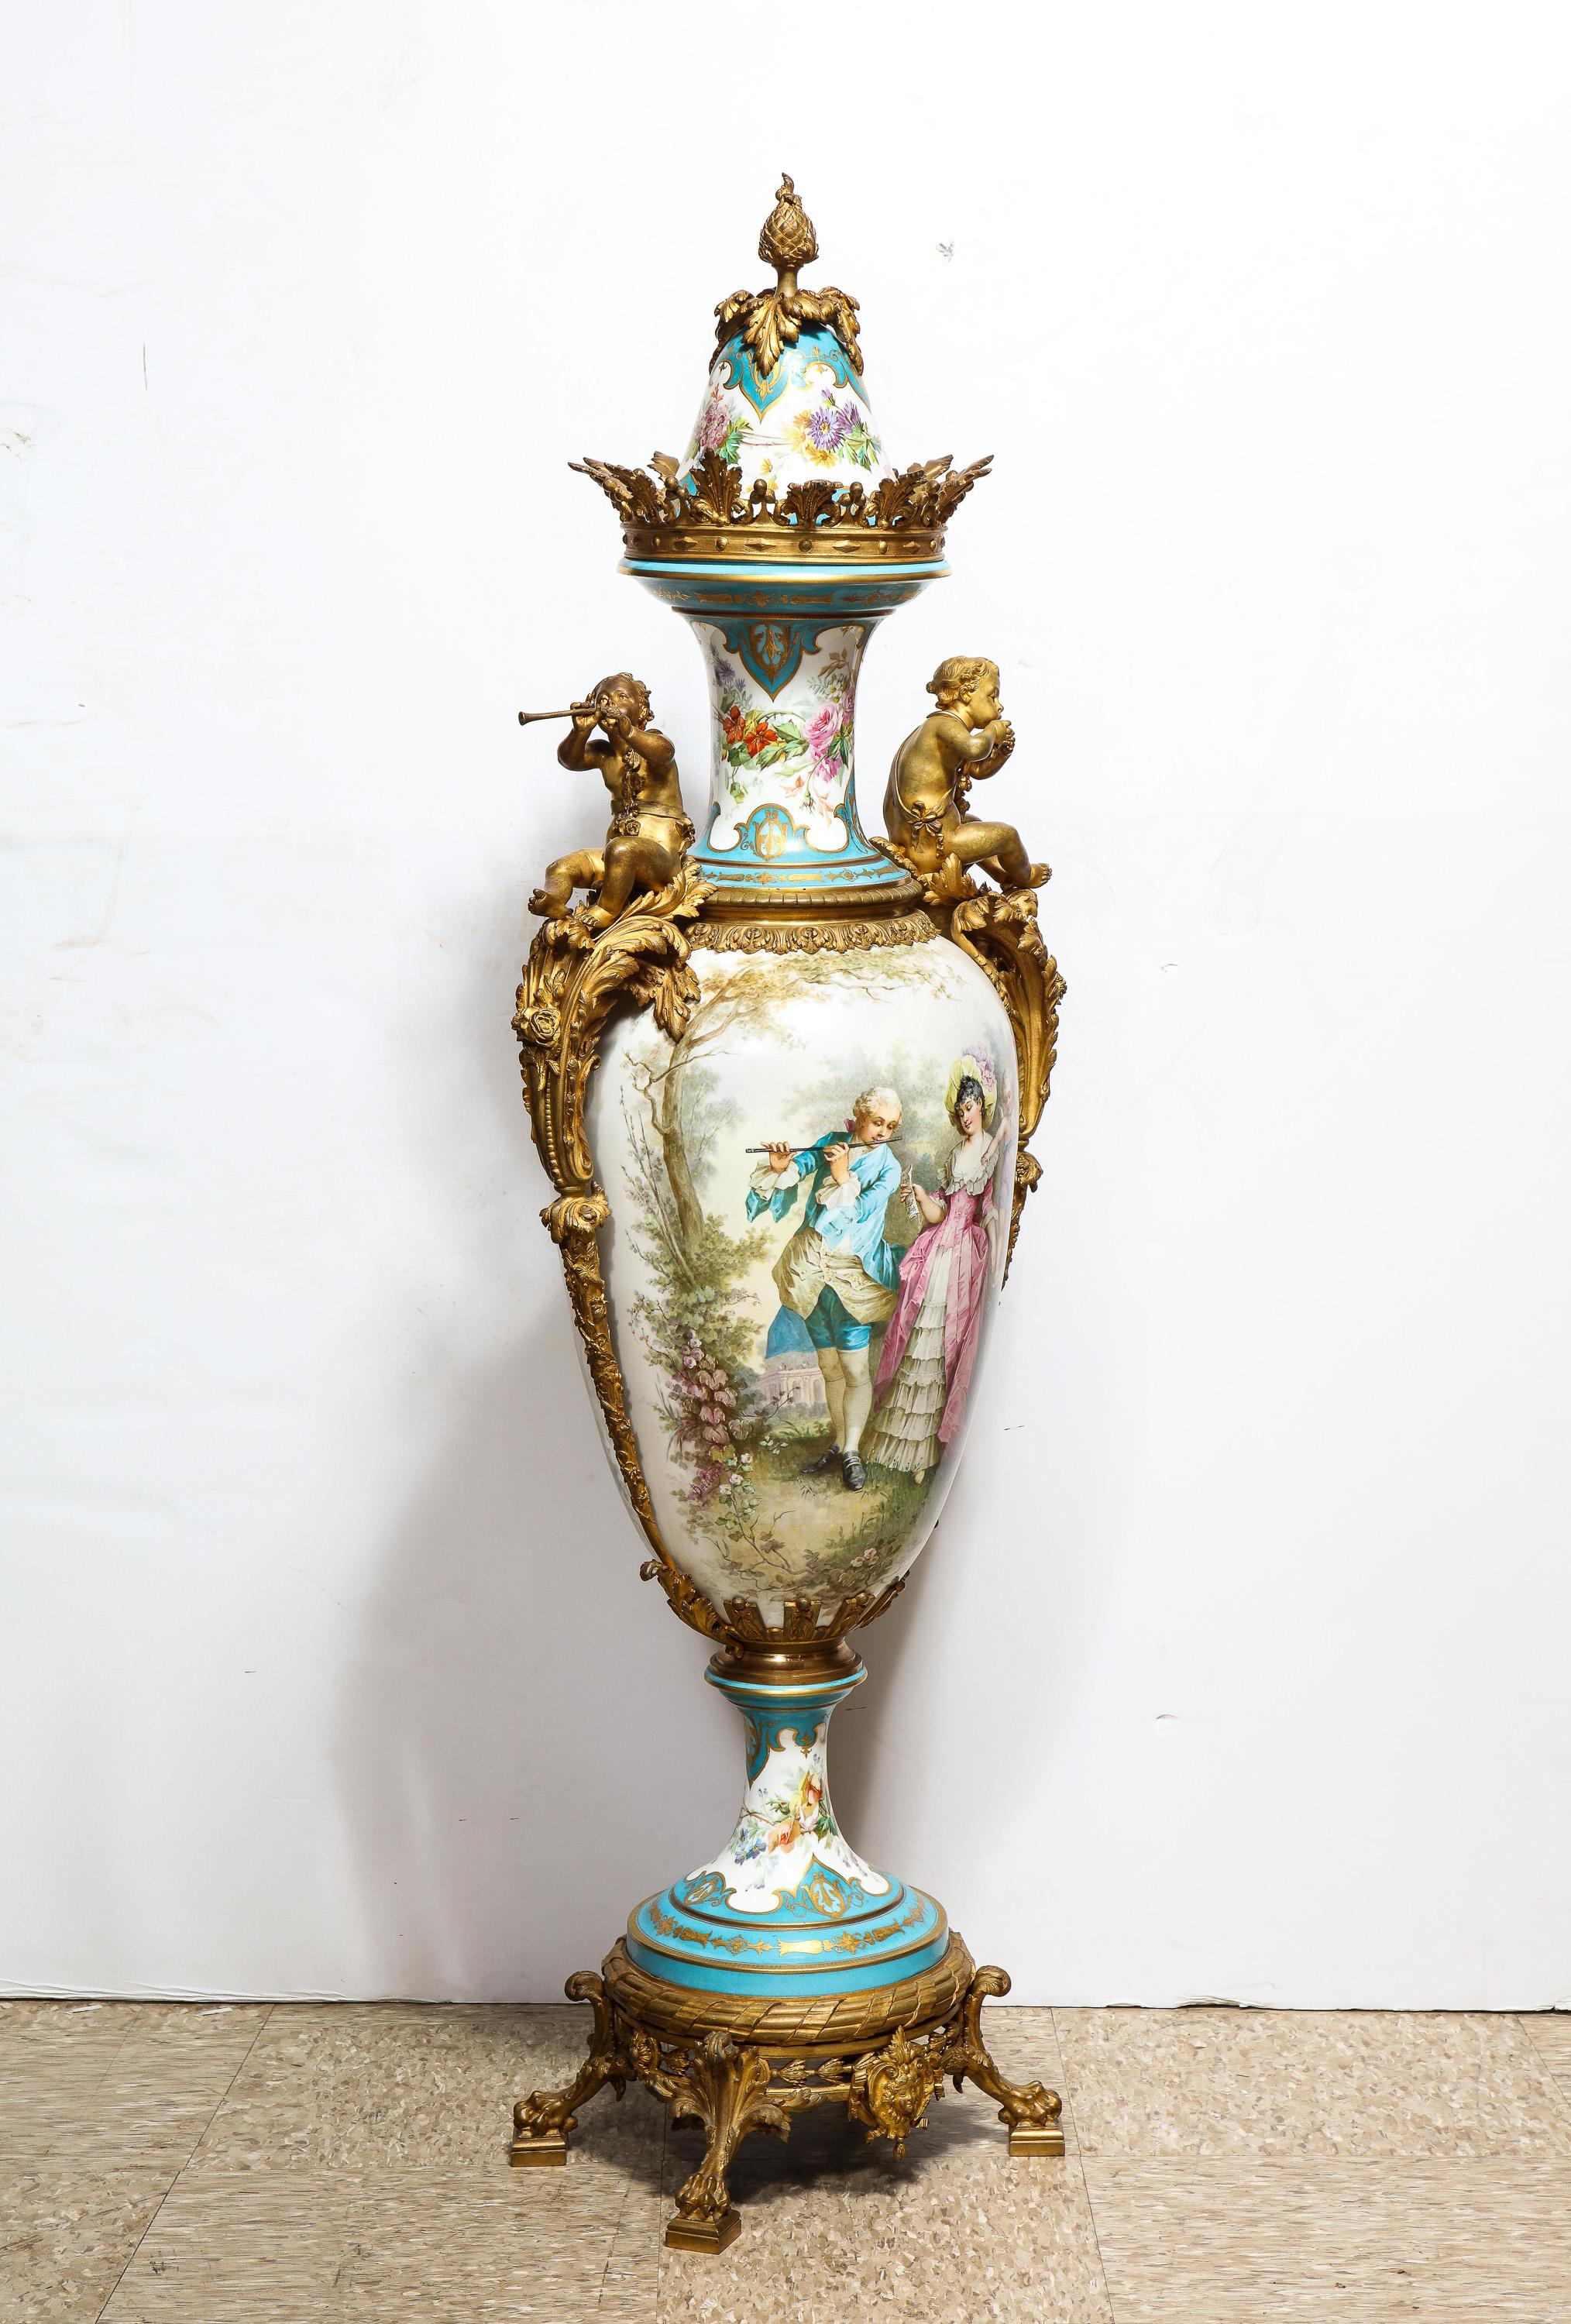 Vase et couvercle en porcelaine de Sèvres peinte à la main et montée en bronze doré, vers 1838.

Ce vase monumental en porcelaine de Sèvres, d'une hauteur de 56 pouces, est magnifiquement peint à la main de scènes classiques d'amoureux et de